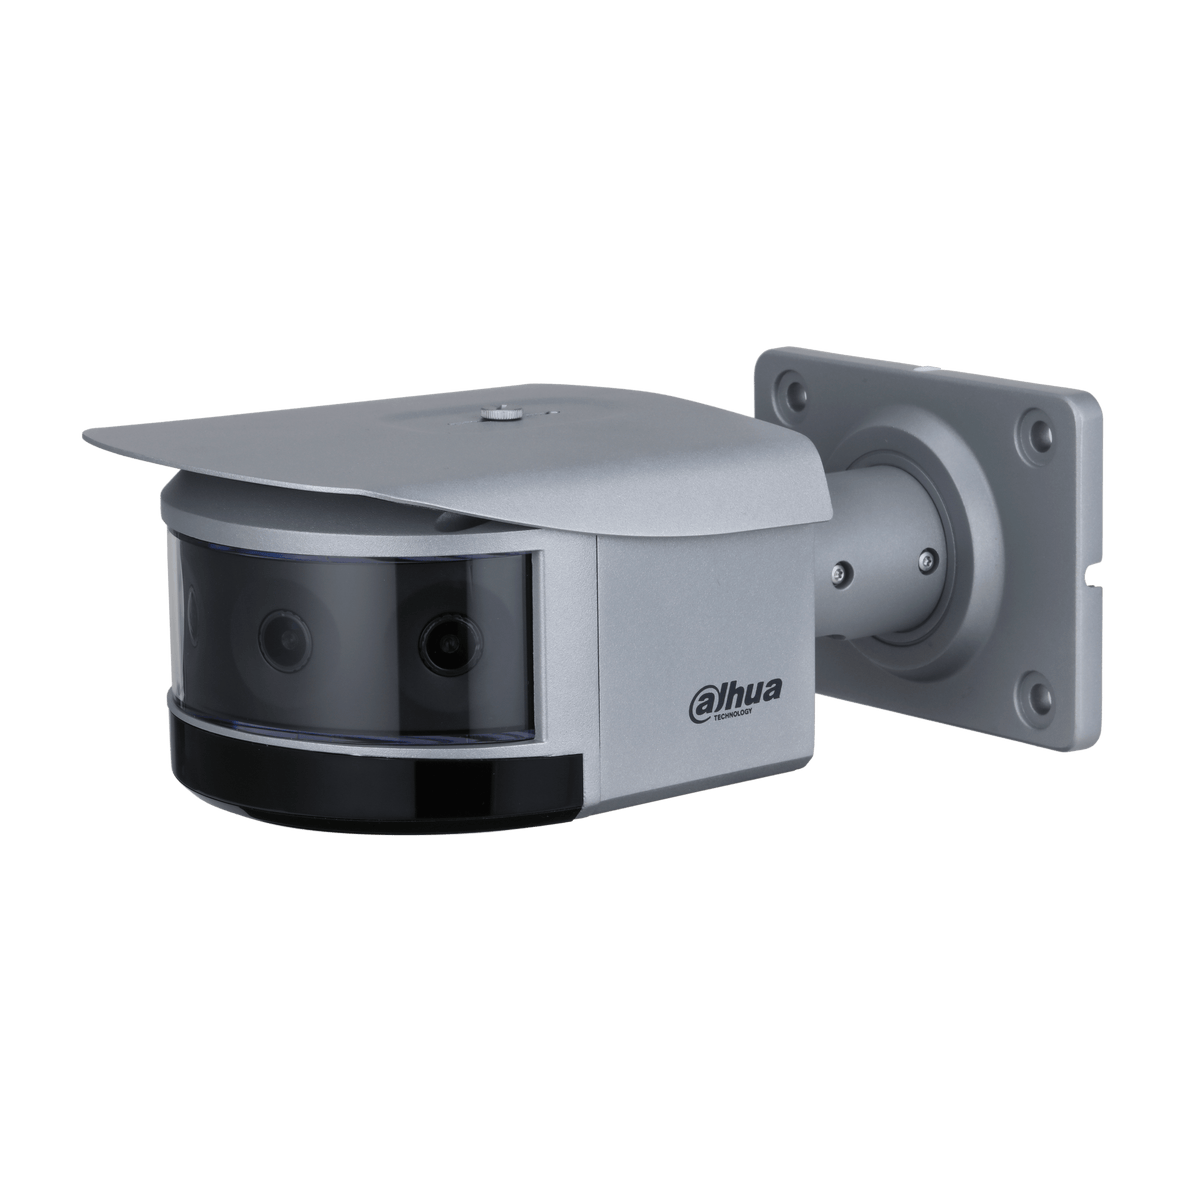 DAHUA IPC-PFW8840-A180 4¡Á2MP WizMind Multi-Sensor Panoramic Network IR Bullet Camera